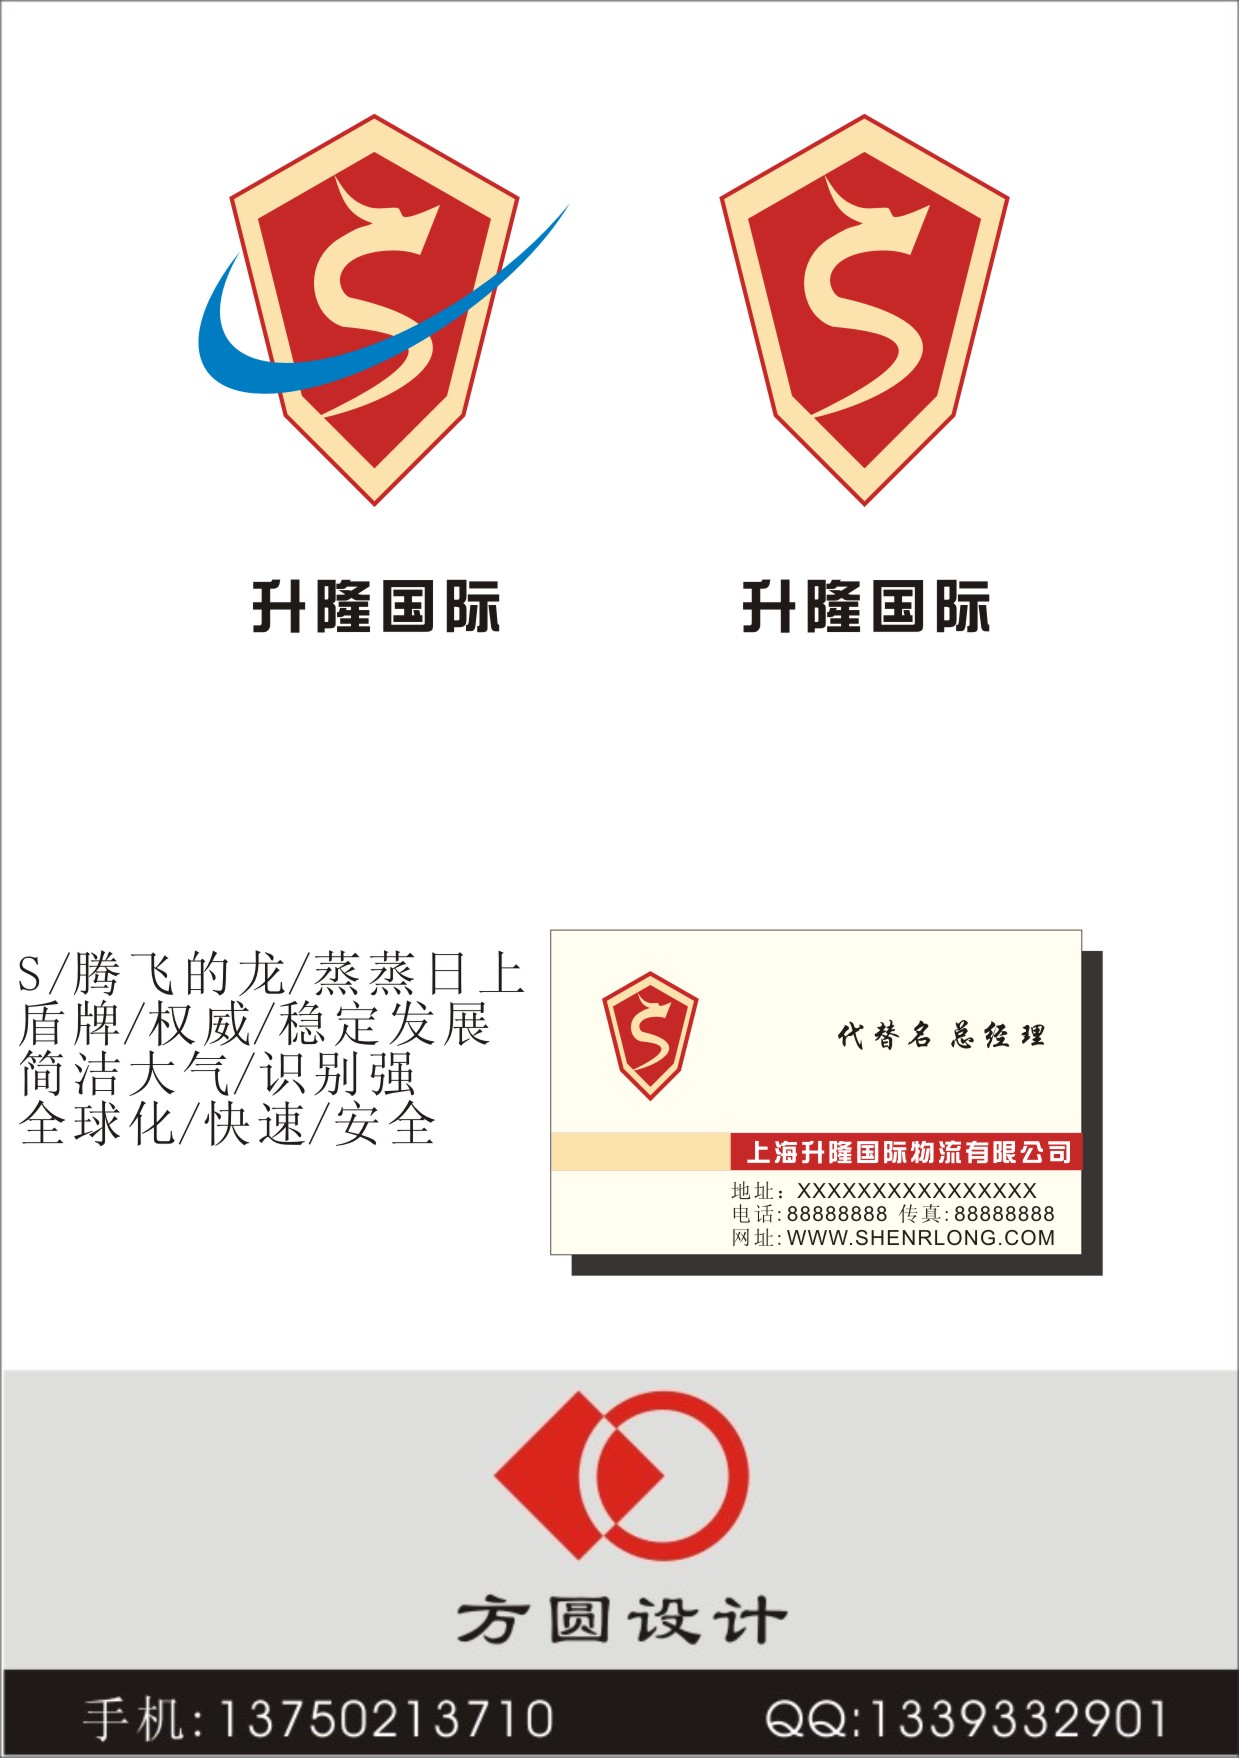 上海升隆国际物流有限公司LOGO及名片设计_